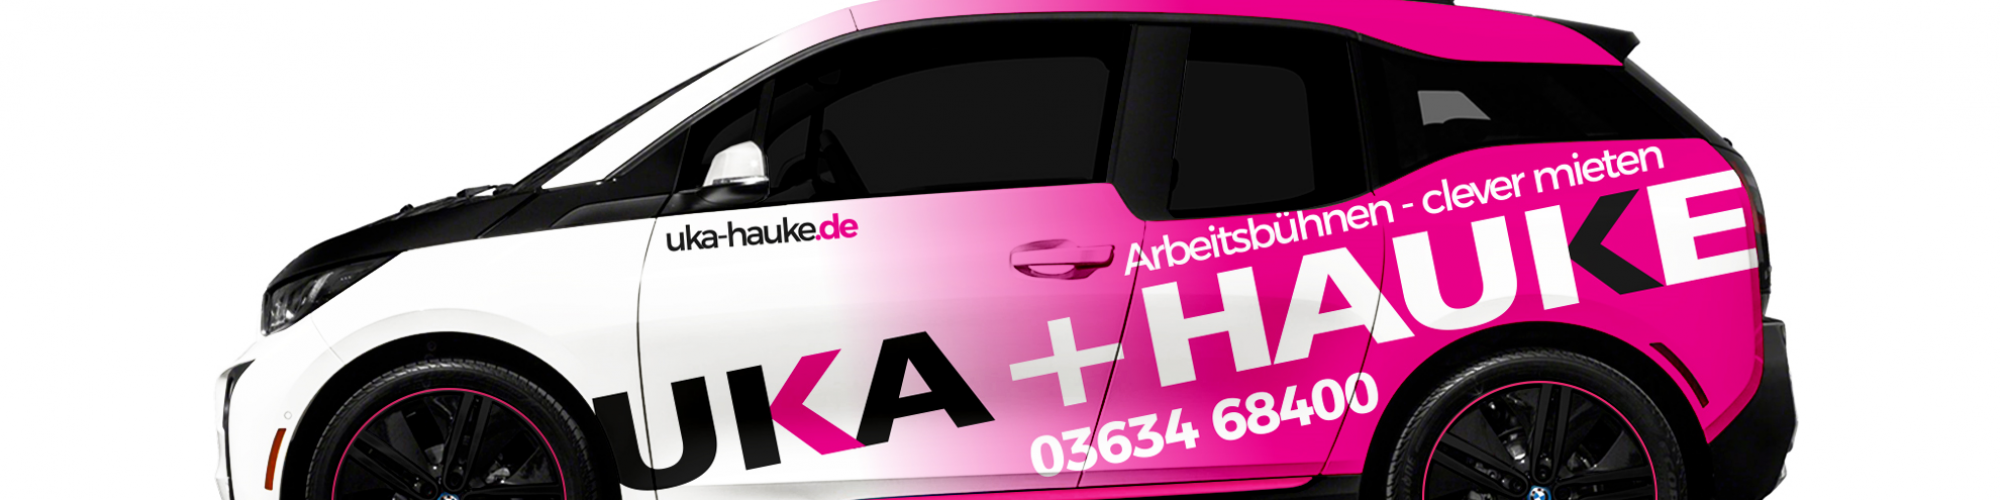 UKA+HAUKE GmbH